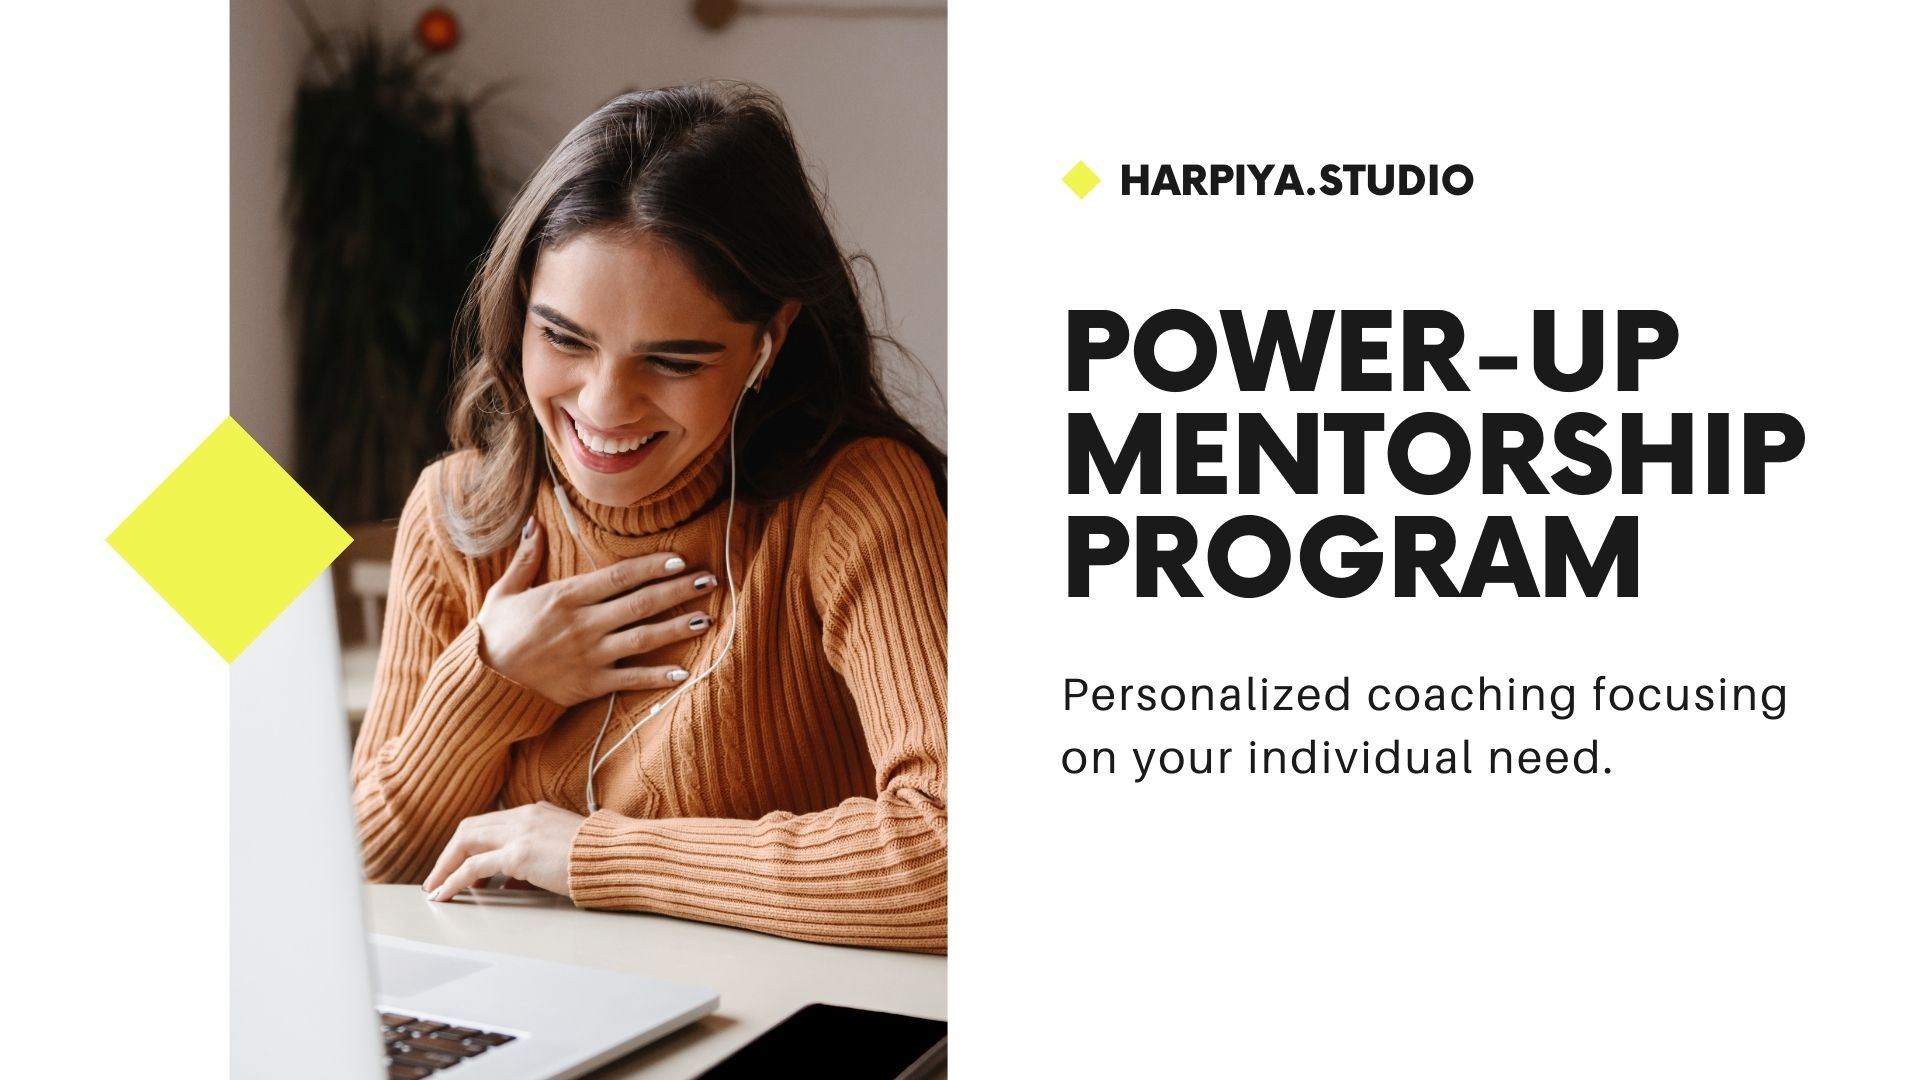 power-up Mentorship program by hgarpiya.studio